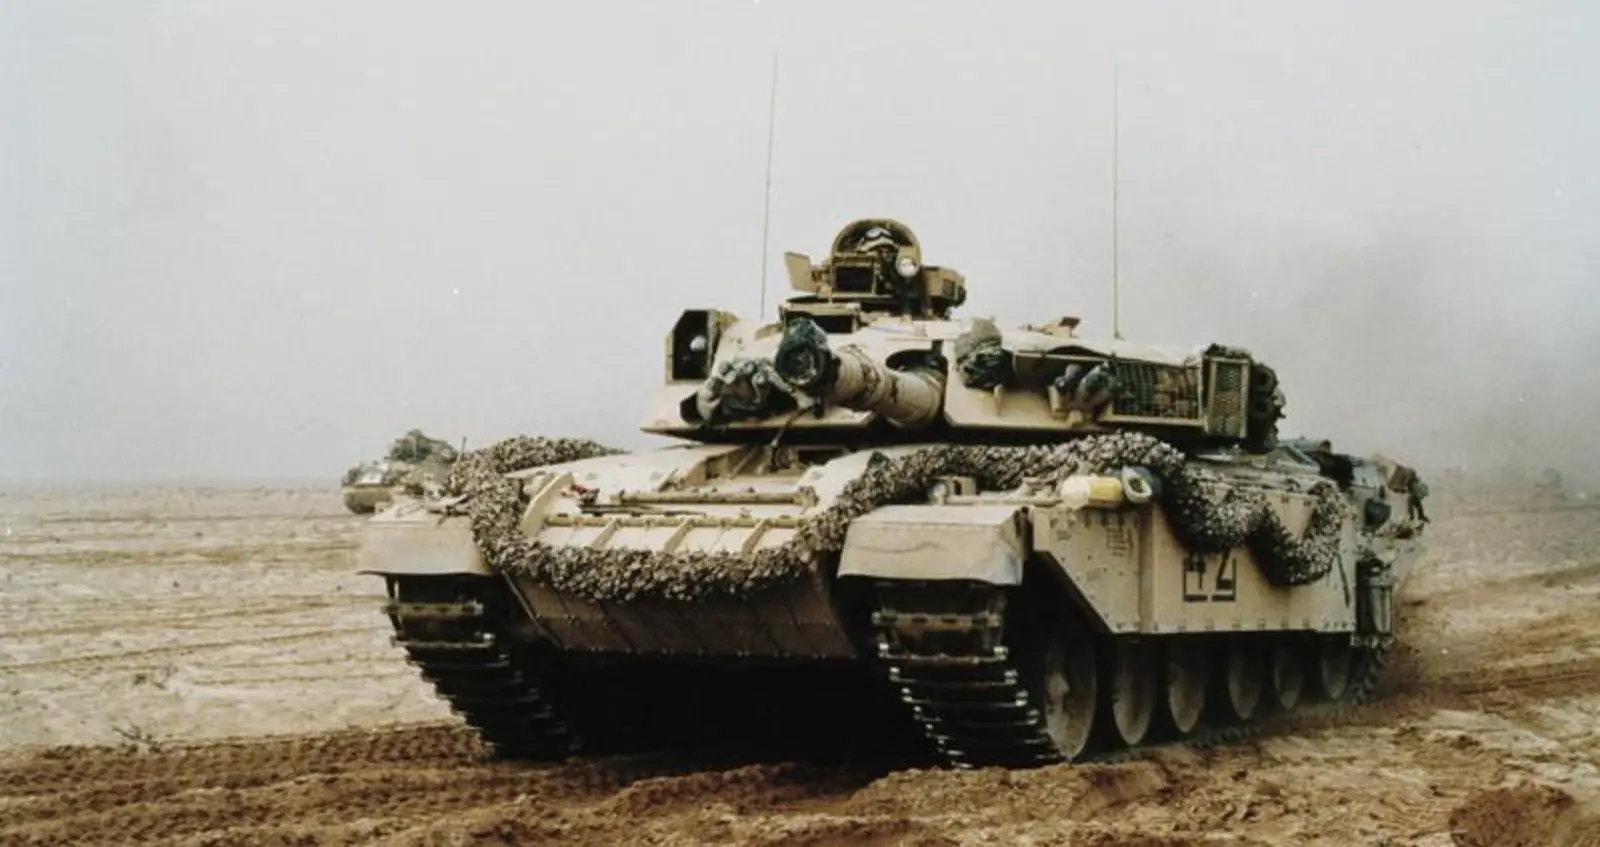 British Challenger tank at high speed © IWM (GLF 444)